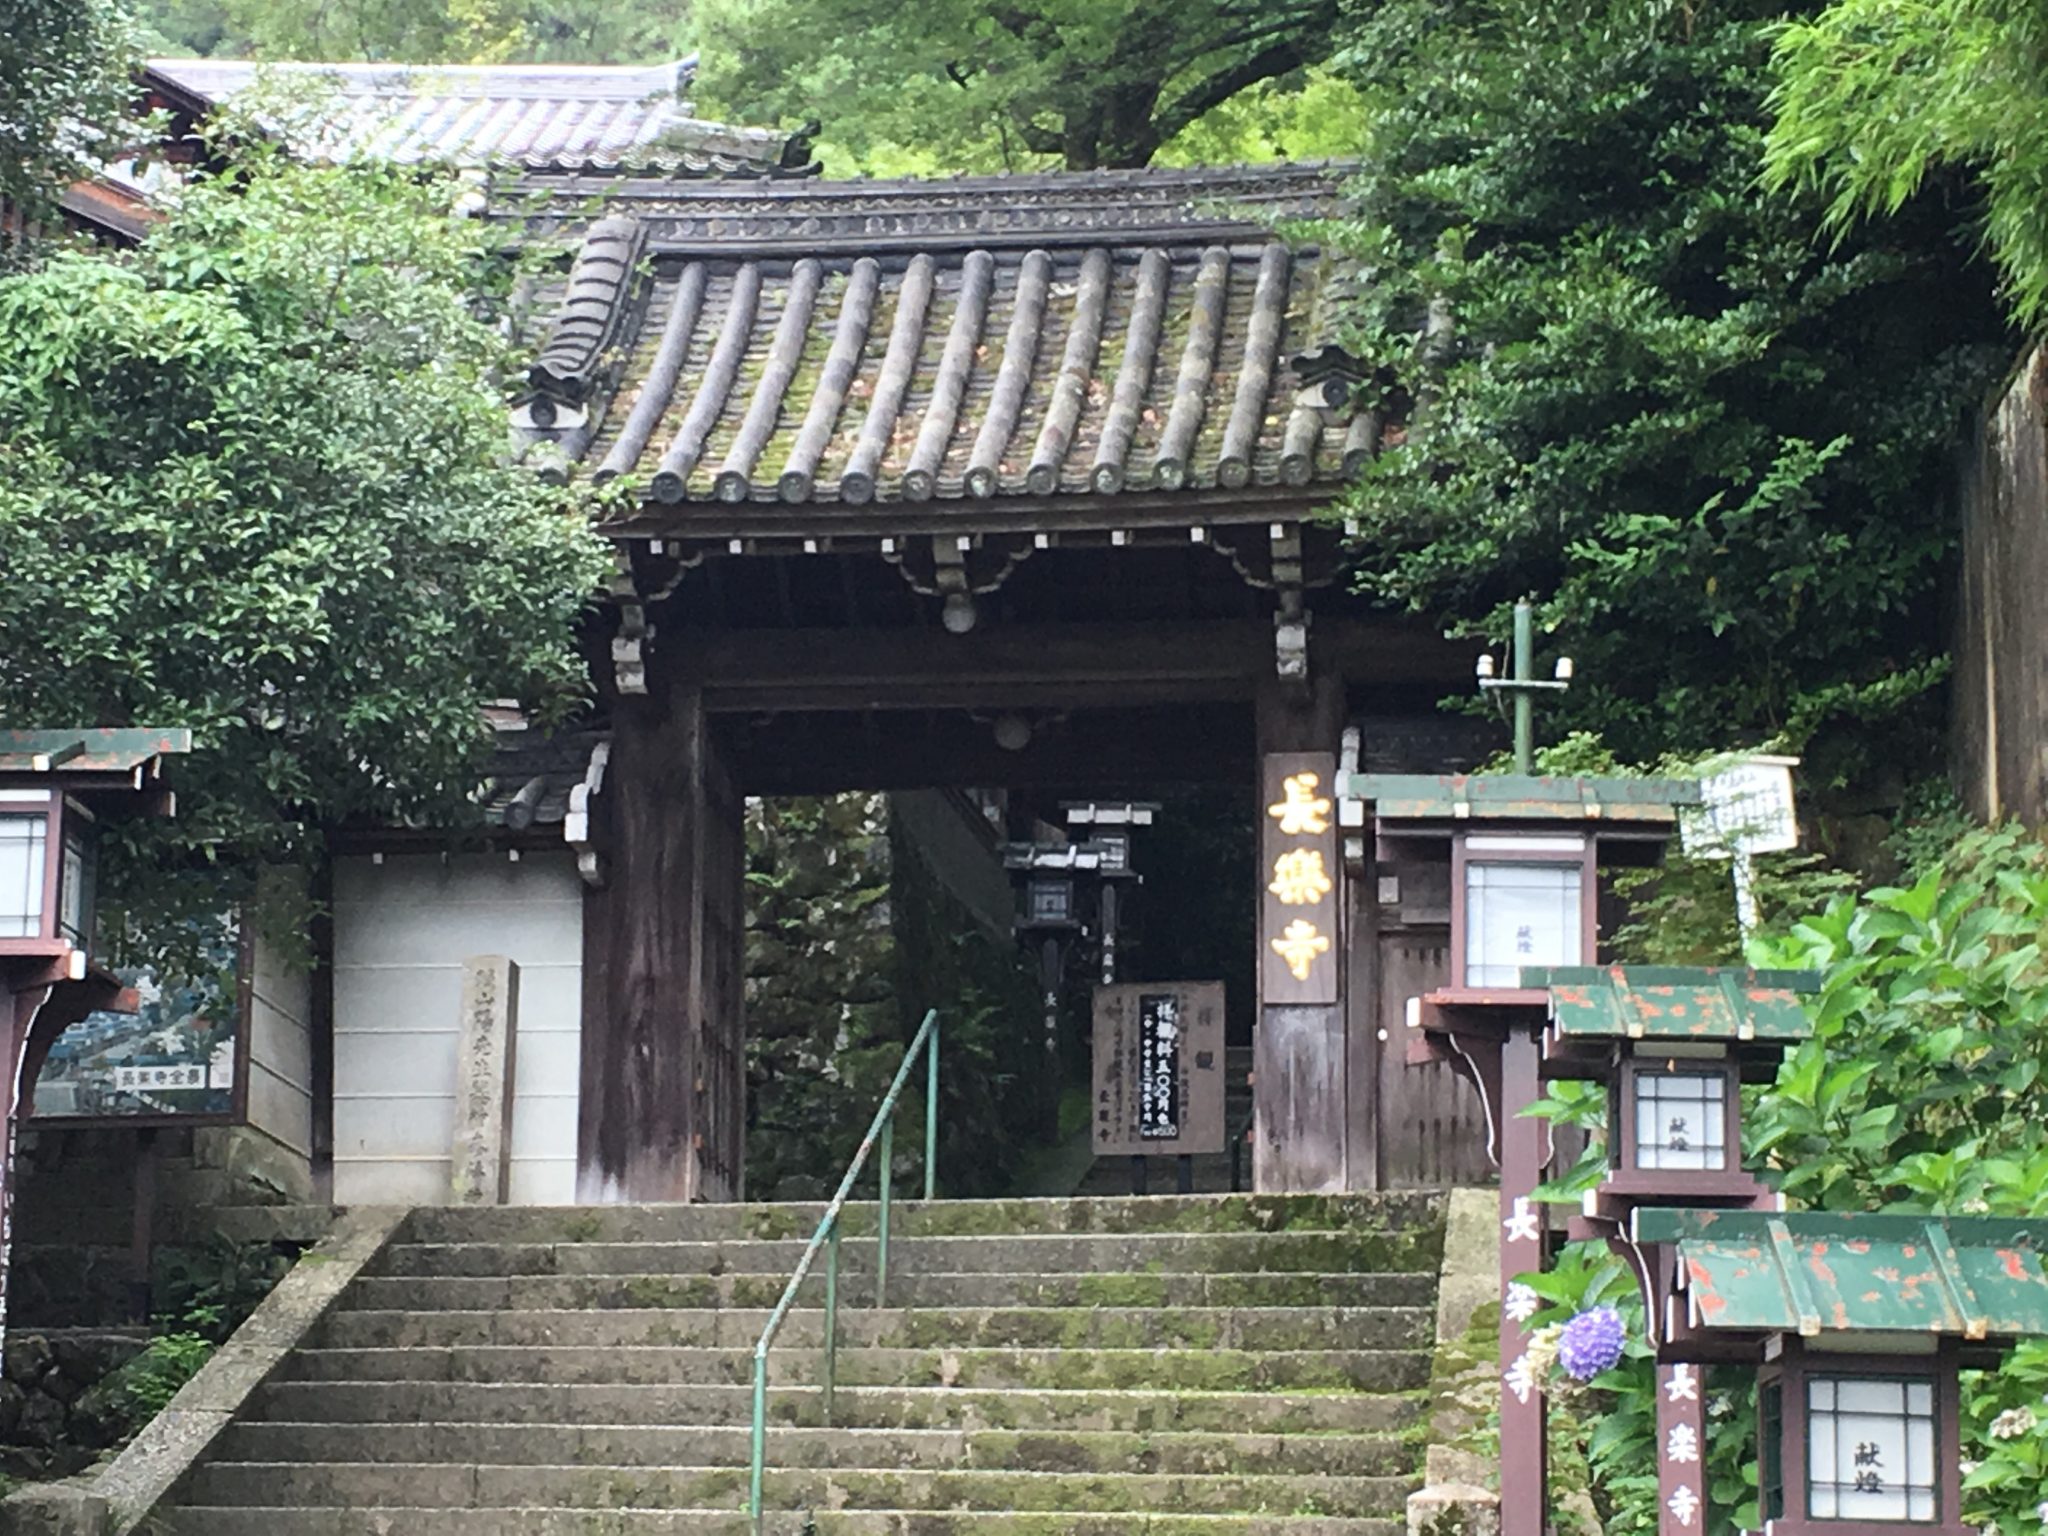 Chorakuji temple